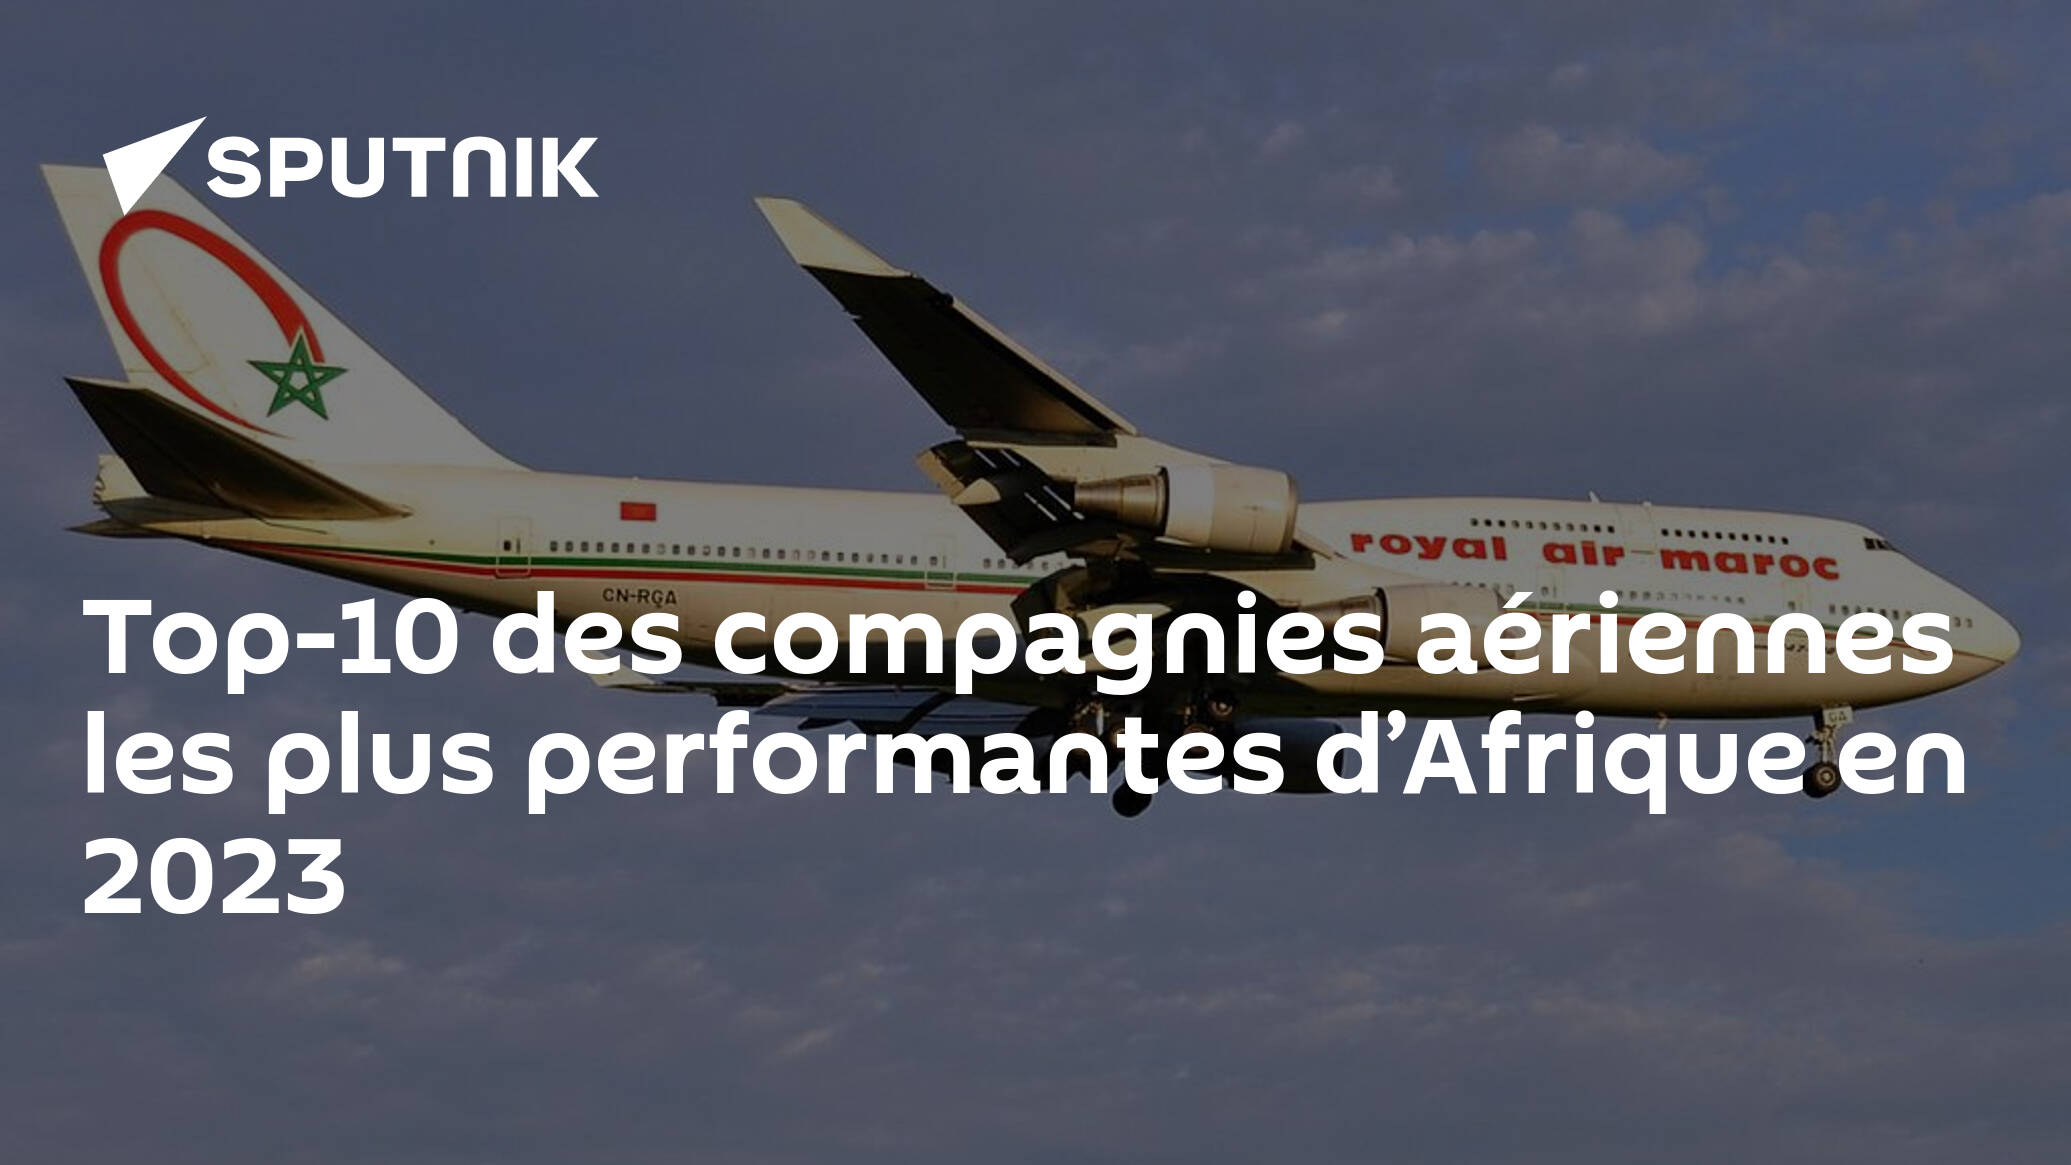 Top-10 des compagnies aériennes les plus performantes d’Afrique en 2023